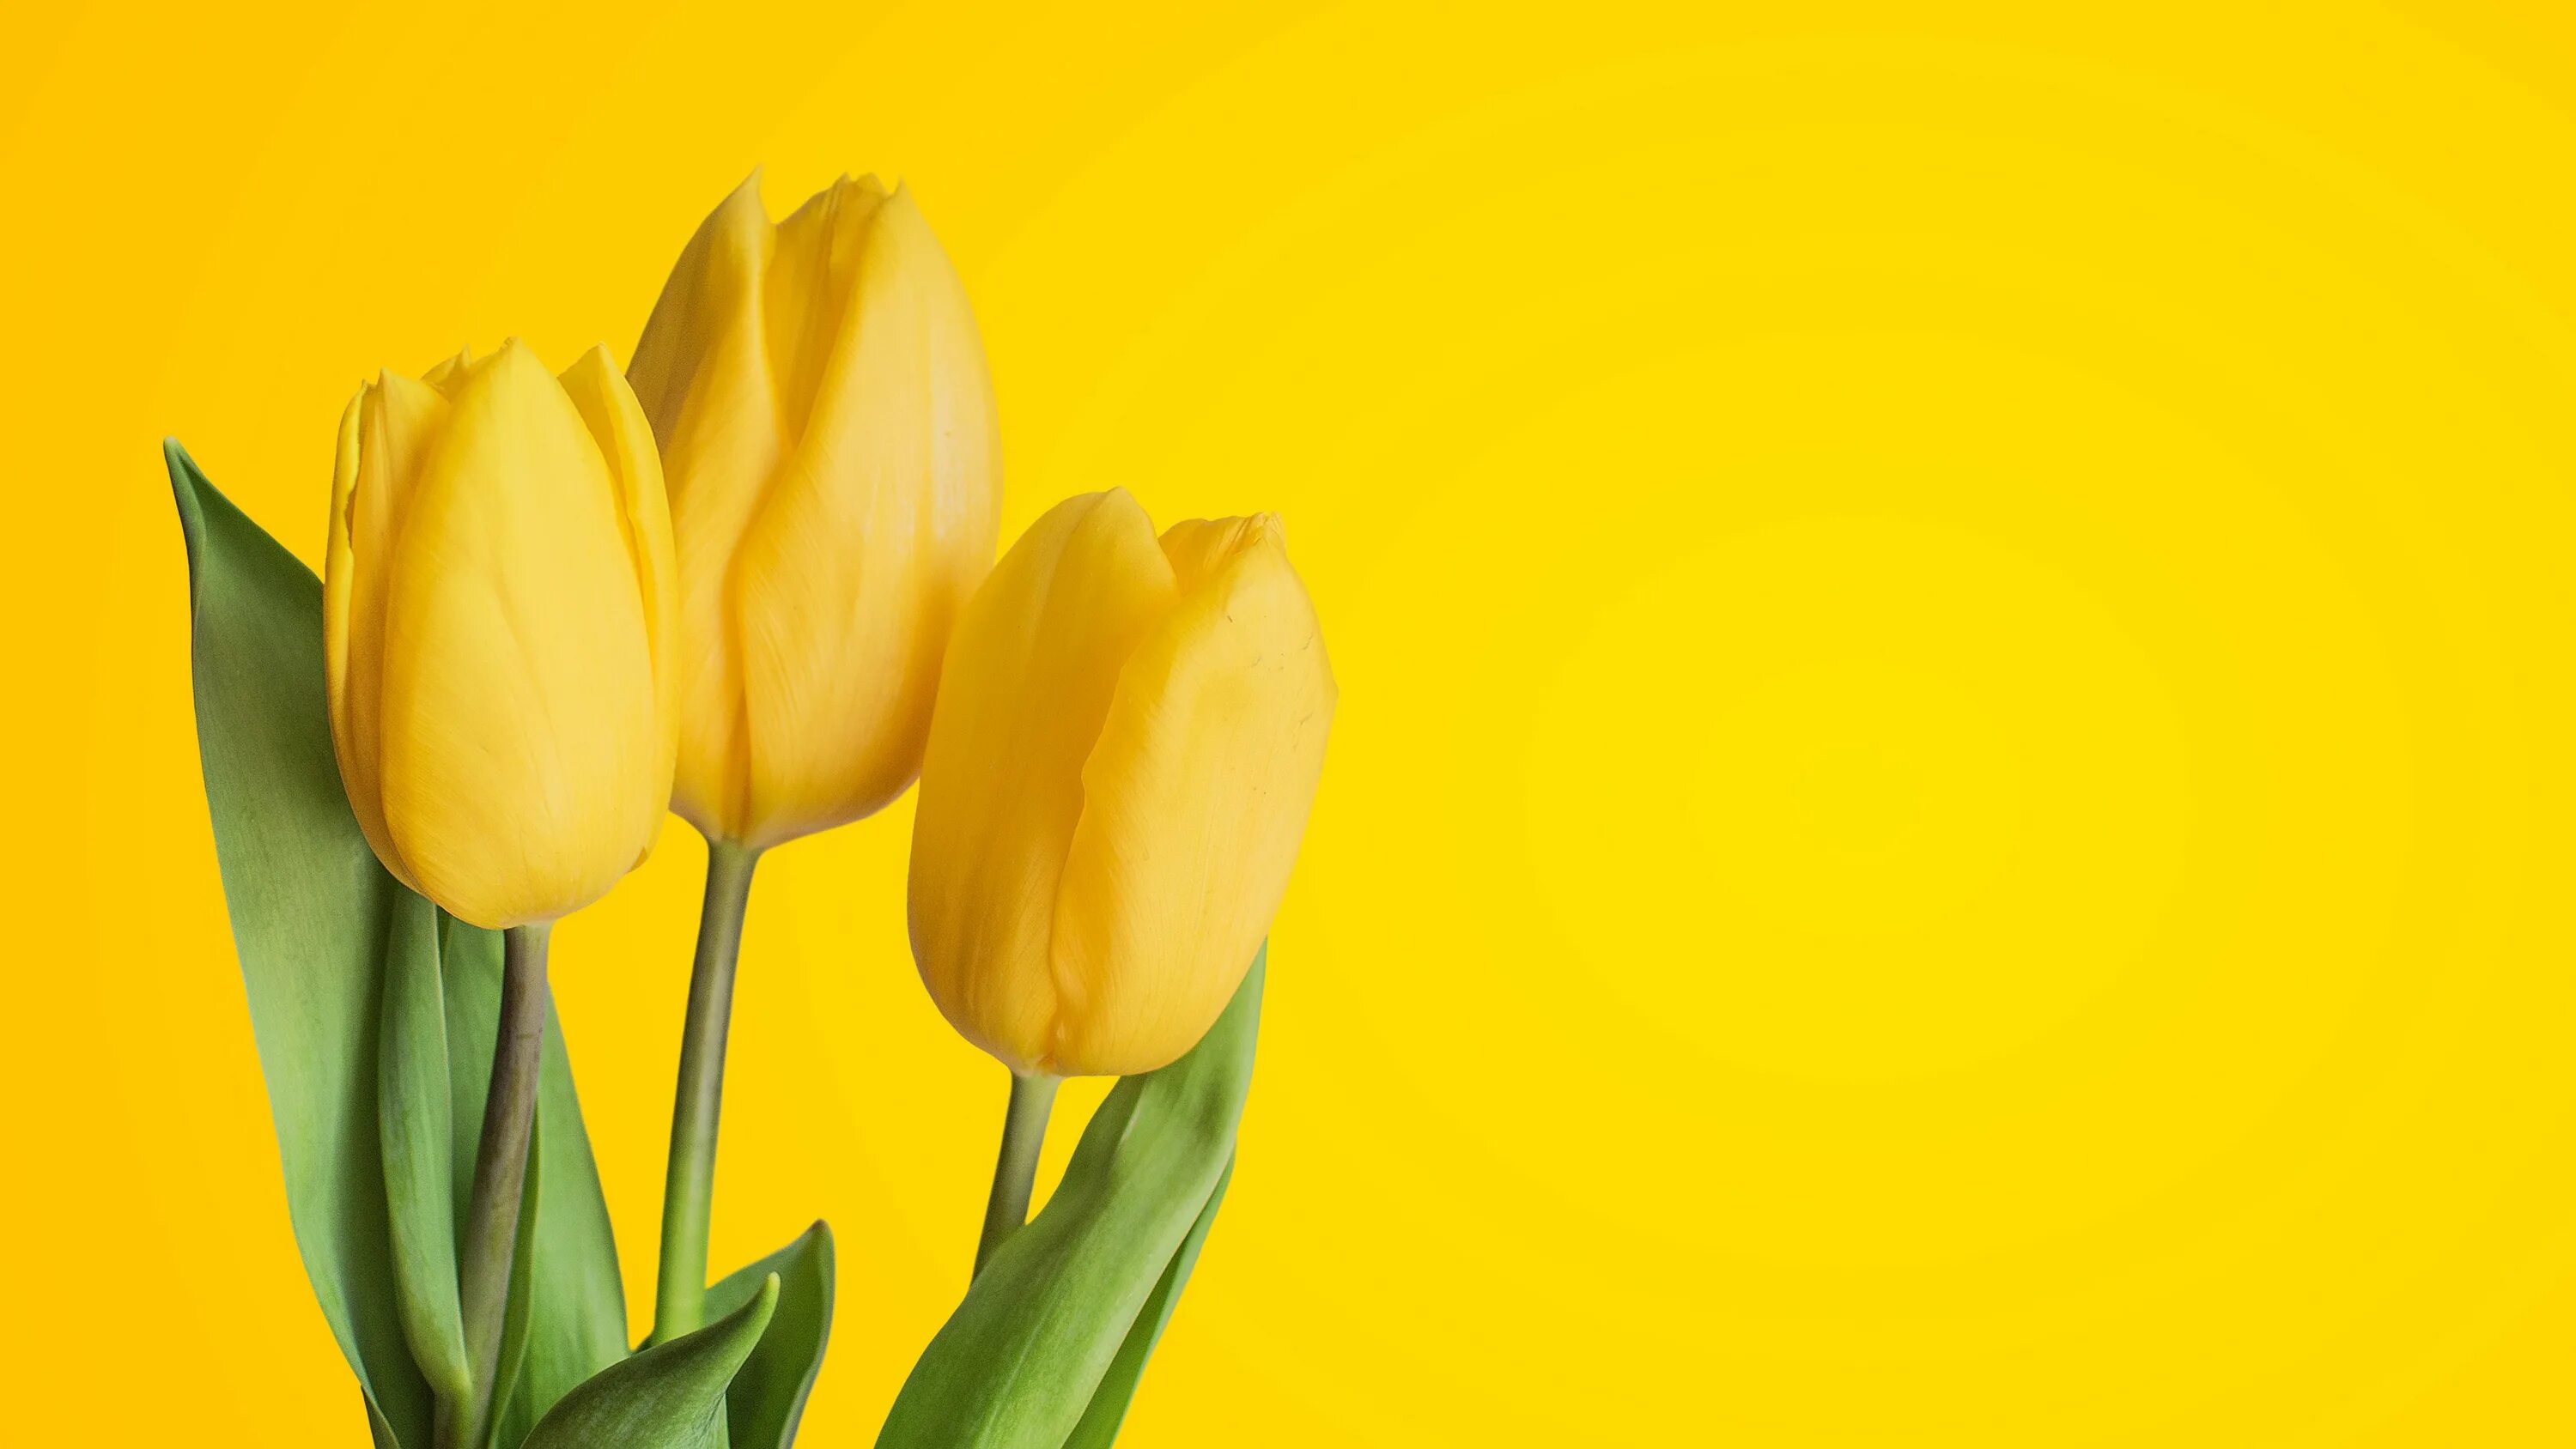 Обои желтые тюльпаны. Желтые тюльпаны. Желтая тюль. Желтый фон с цветочками. Тюльпаны на желтом фоне.